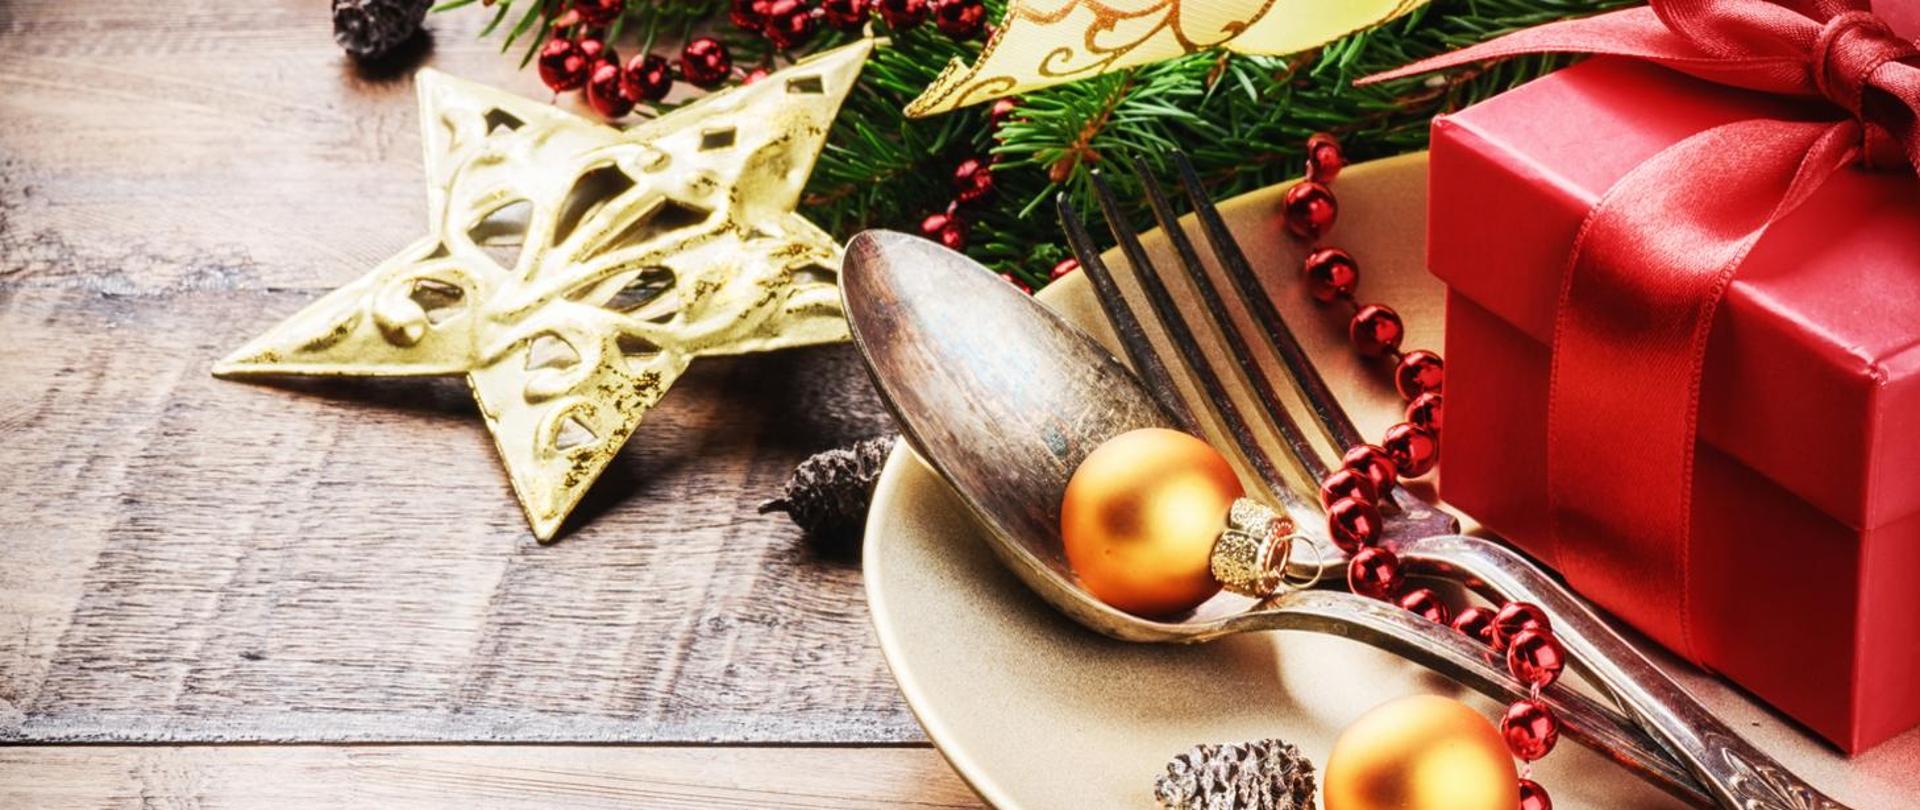 Na zdjęciu widoczny talerz, sztućce, na talerzu czerwone pudełko i dwie złote bombki a obok talerza ozdoba świąteczna w postaci świerku, gwiazdy i szyszek.